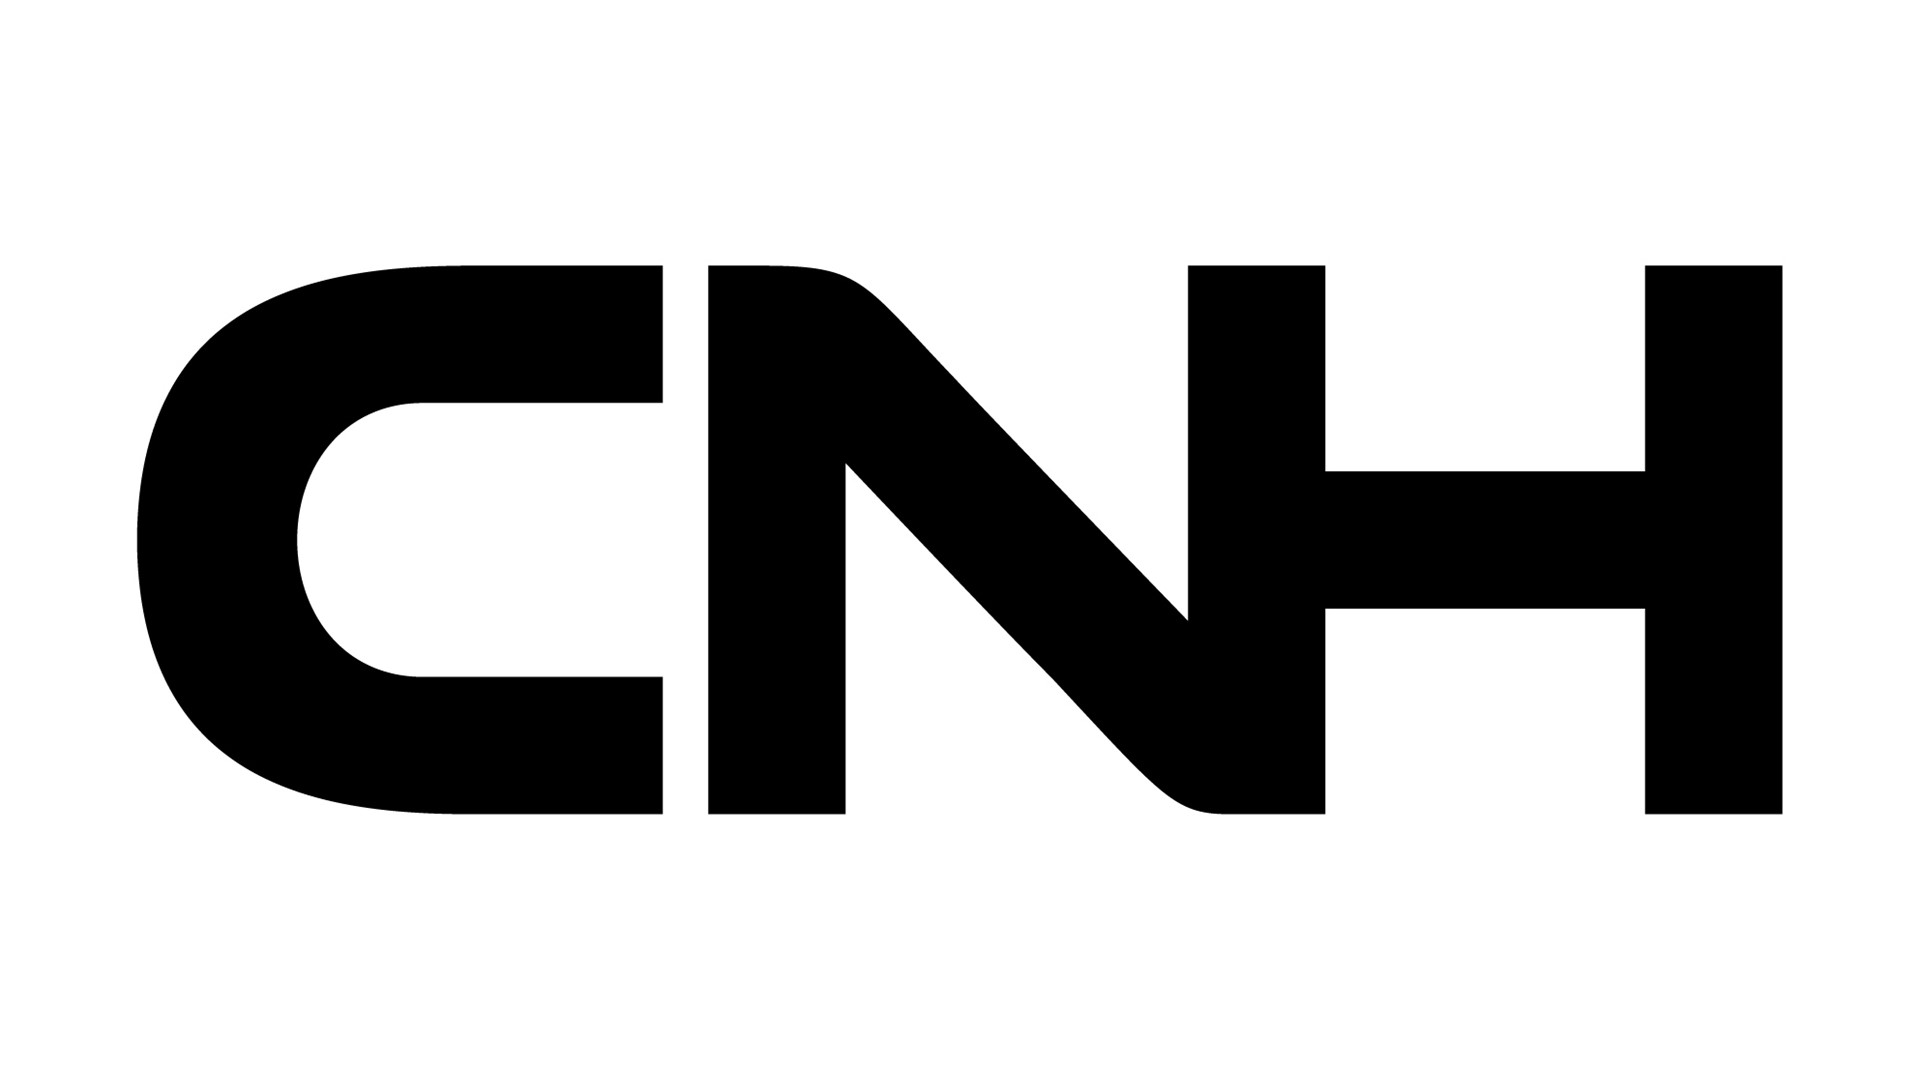 CNH Logo